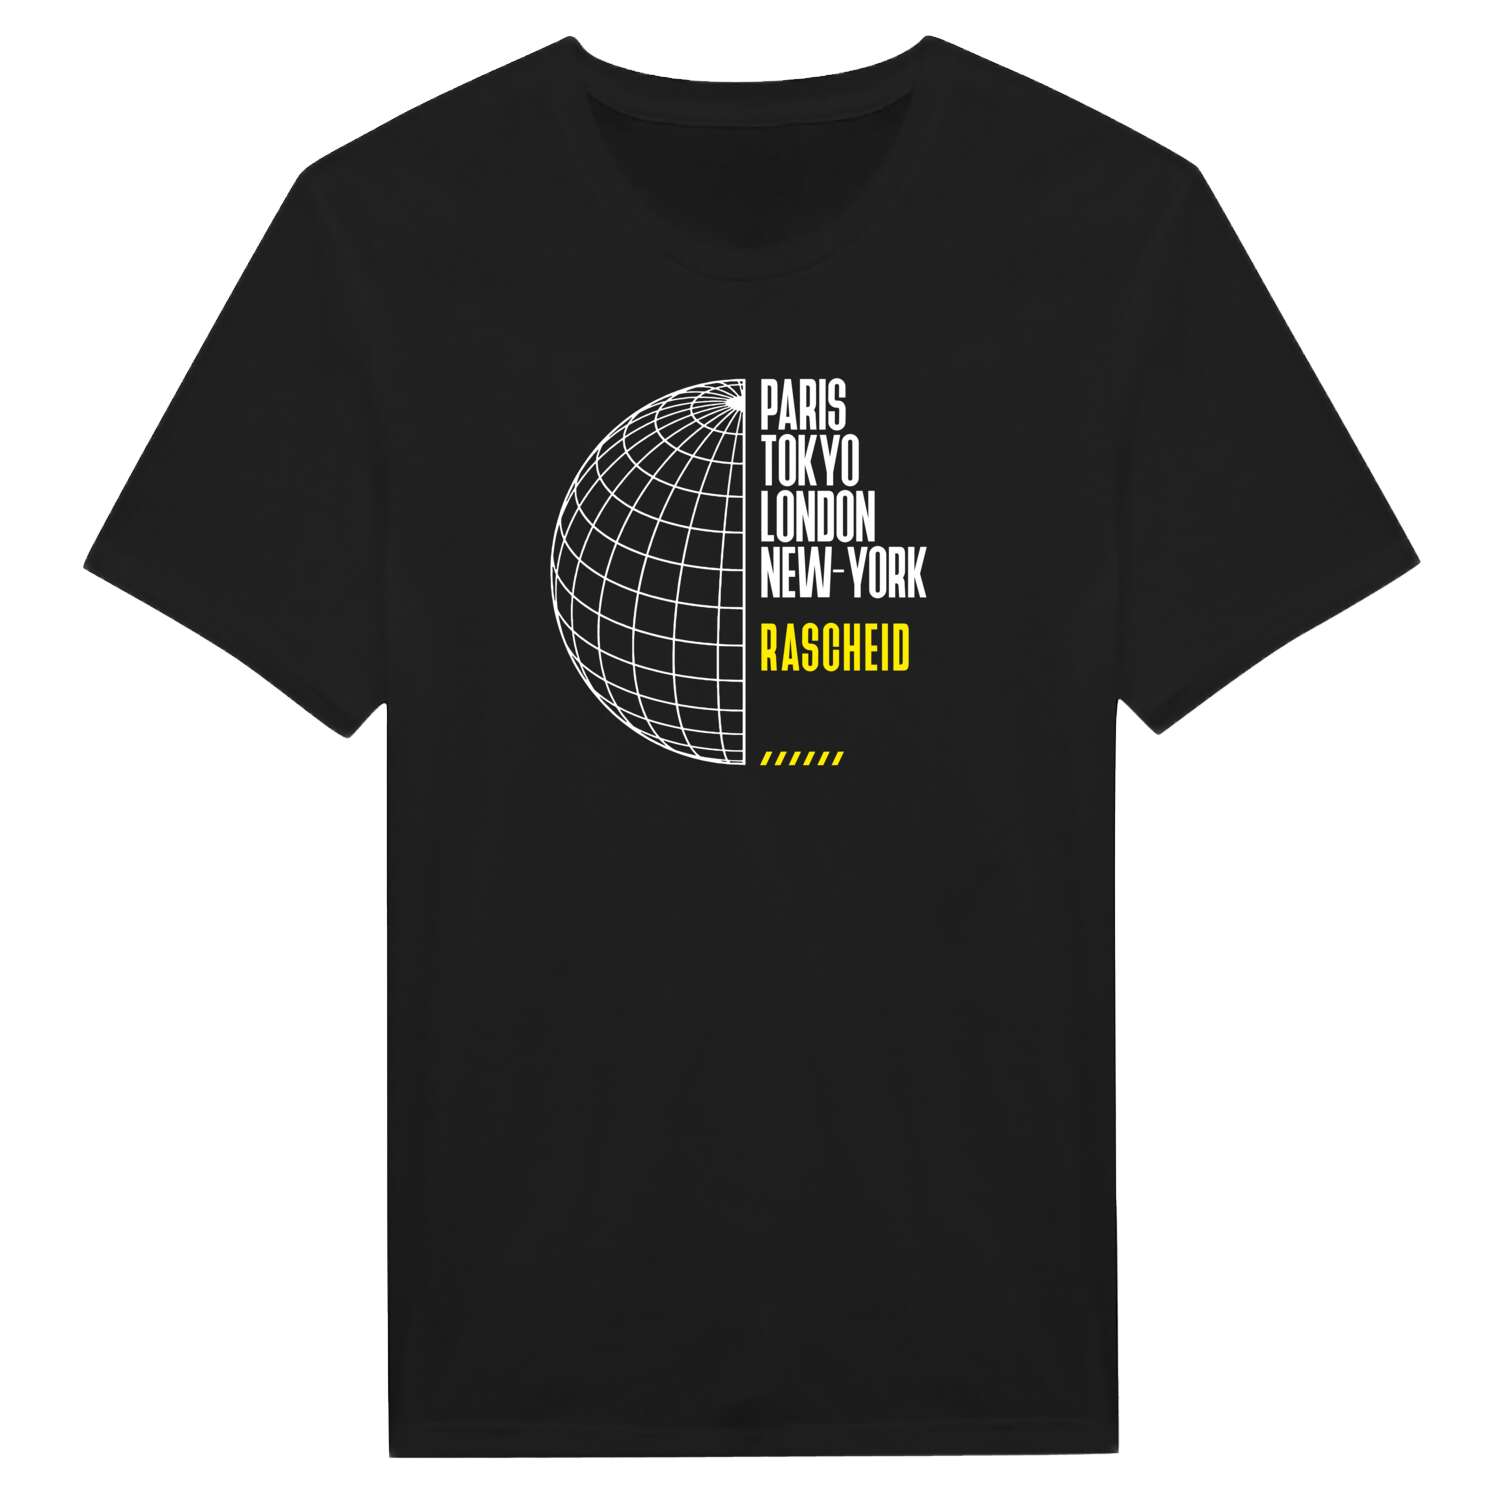 Rascheid T-Shirt »Paris Tokyo London«